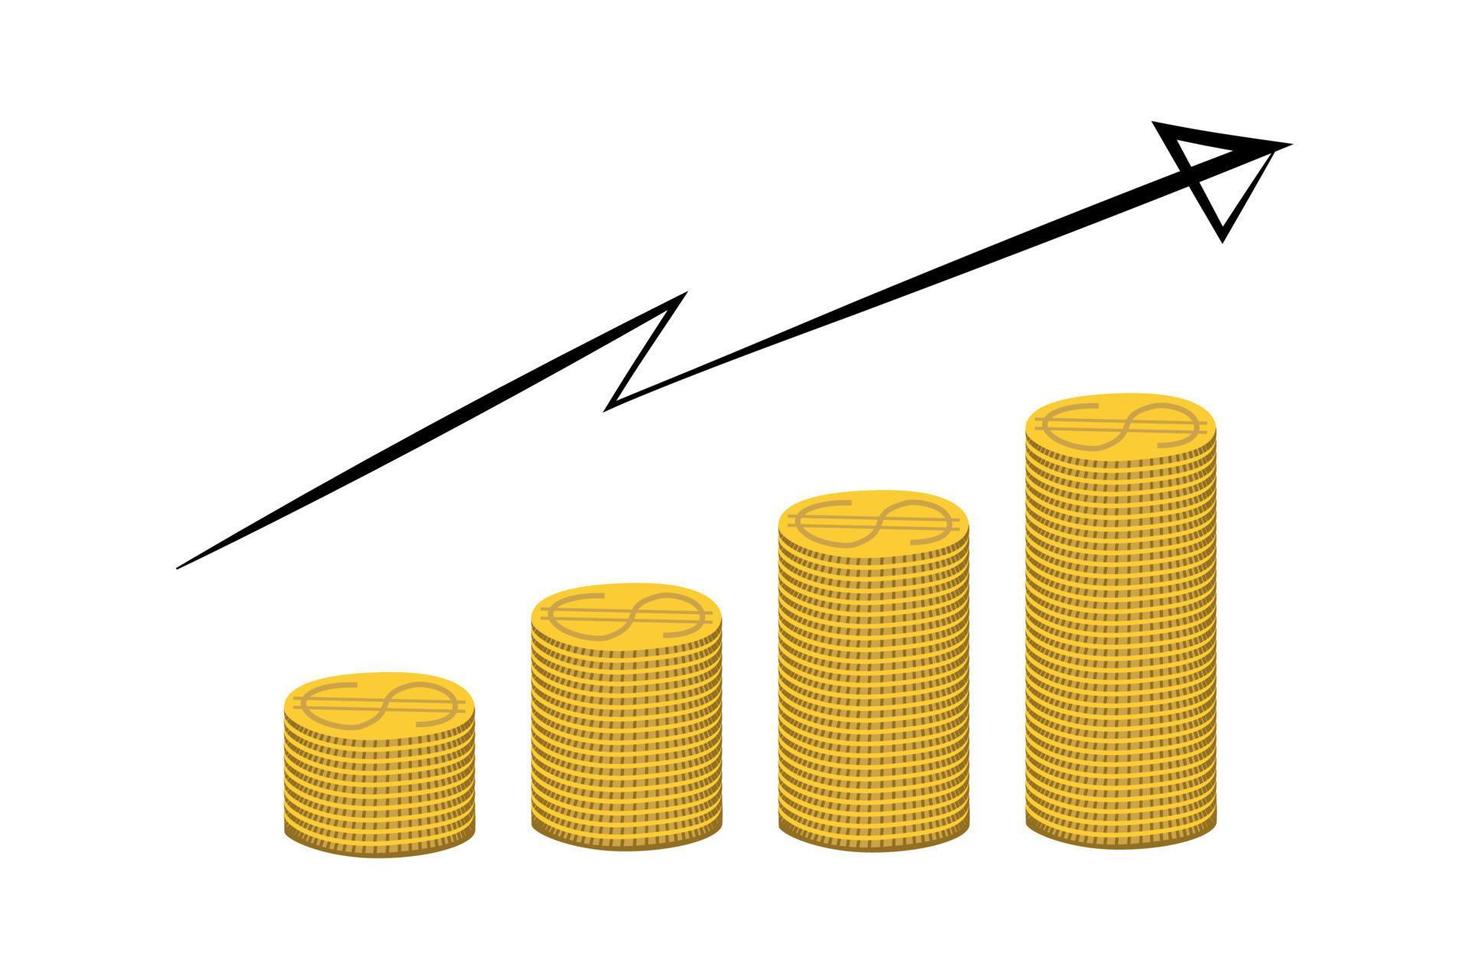 Goldene Dollarmünzen stapeln sich mit Pfeil nach oben. geld, wirtschaft, finanzen, investitionssymbol. Konzept des Währungswachstumsdiagramms. vektor